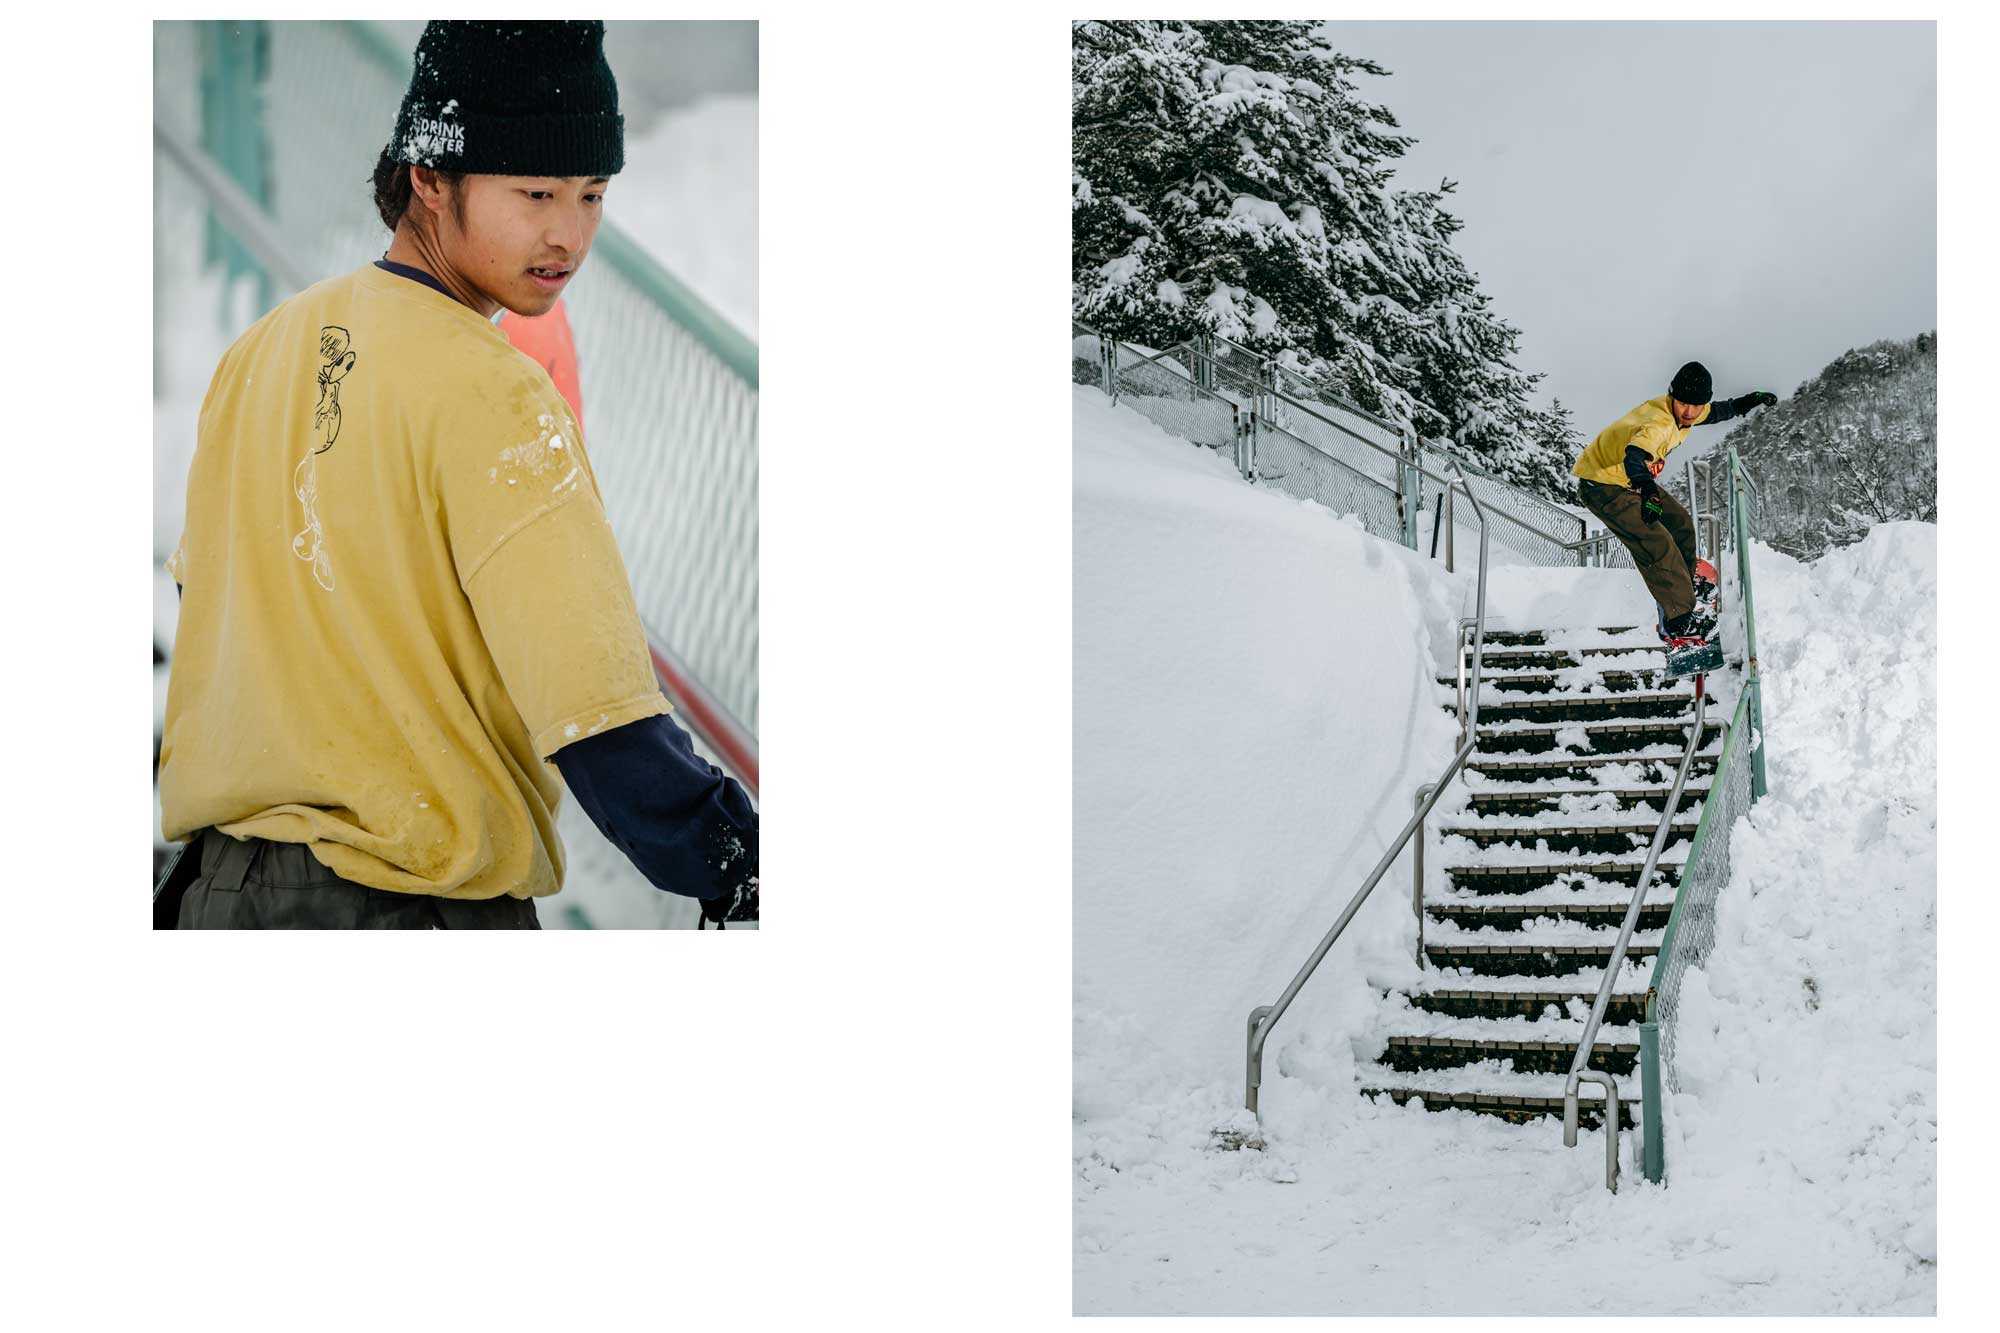 suzuki yuya 鈴木裕也 スノーボード snowboarding